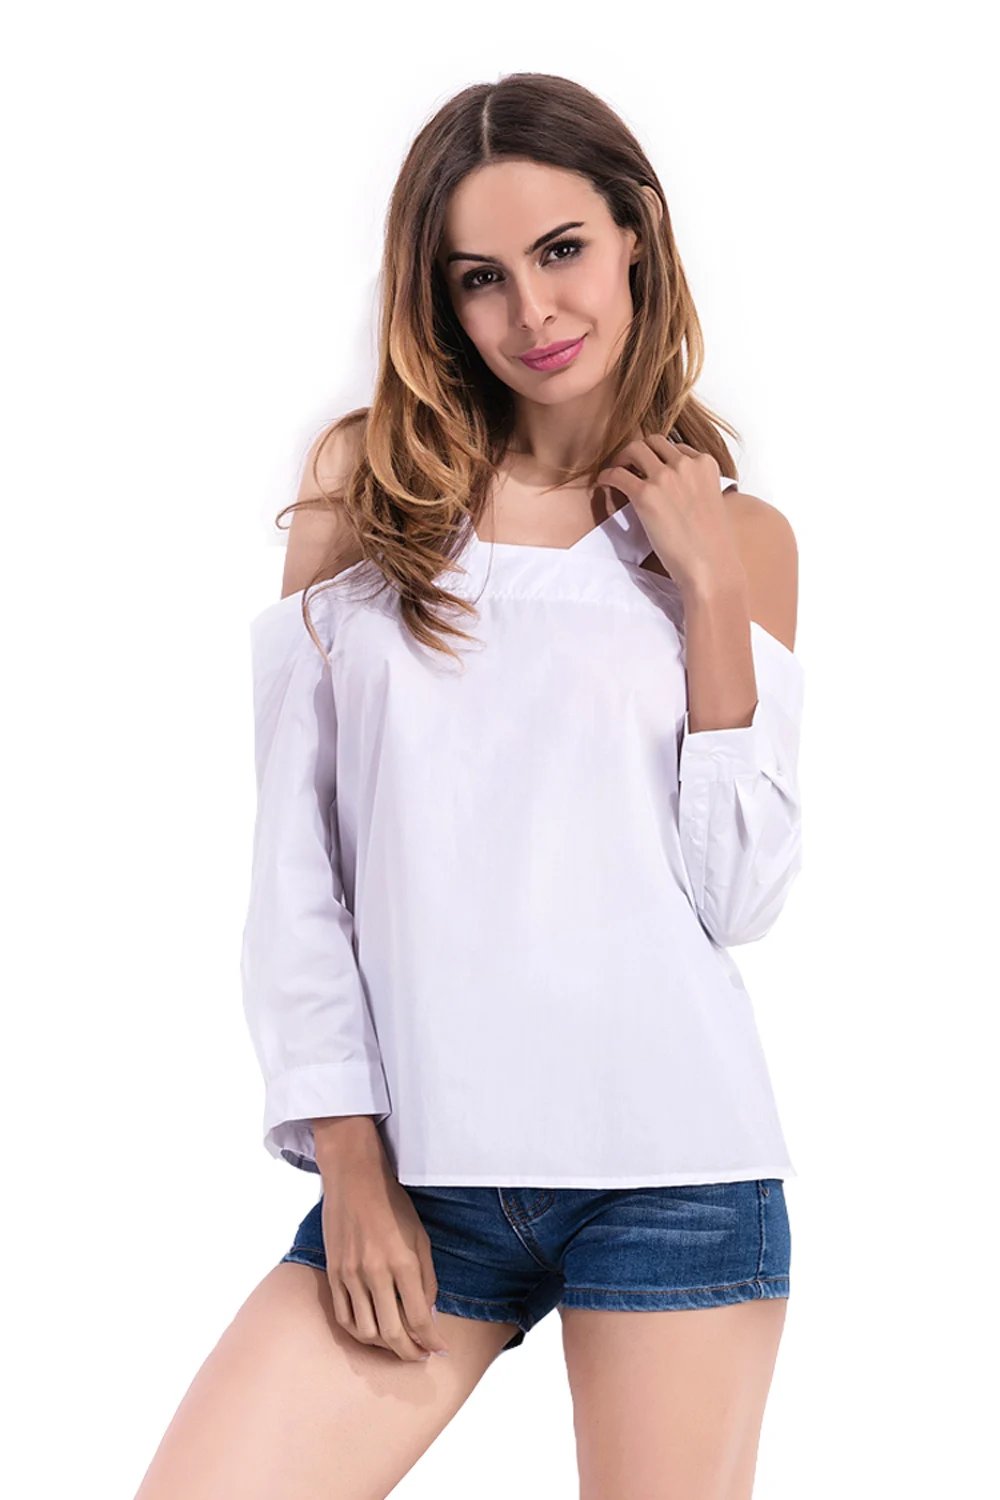 Сексуальная рубашка для беременных Свободная Повседневная Блузка Топы с открытыми плечами на бретельках блузка с вырезом лодочкой Спагетти ремень рубашки 3/4 рукав